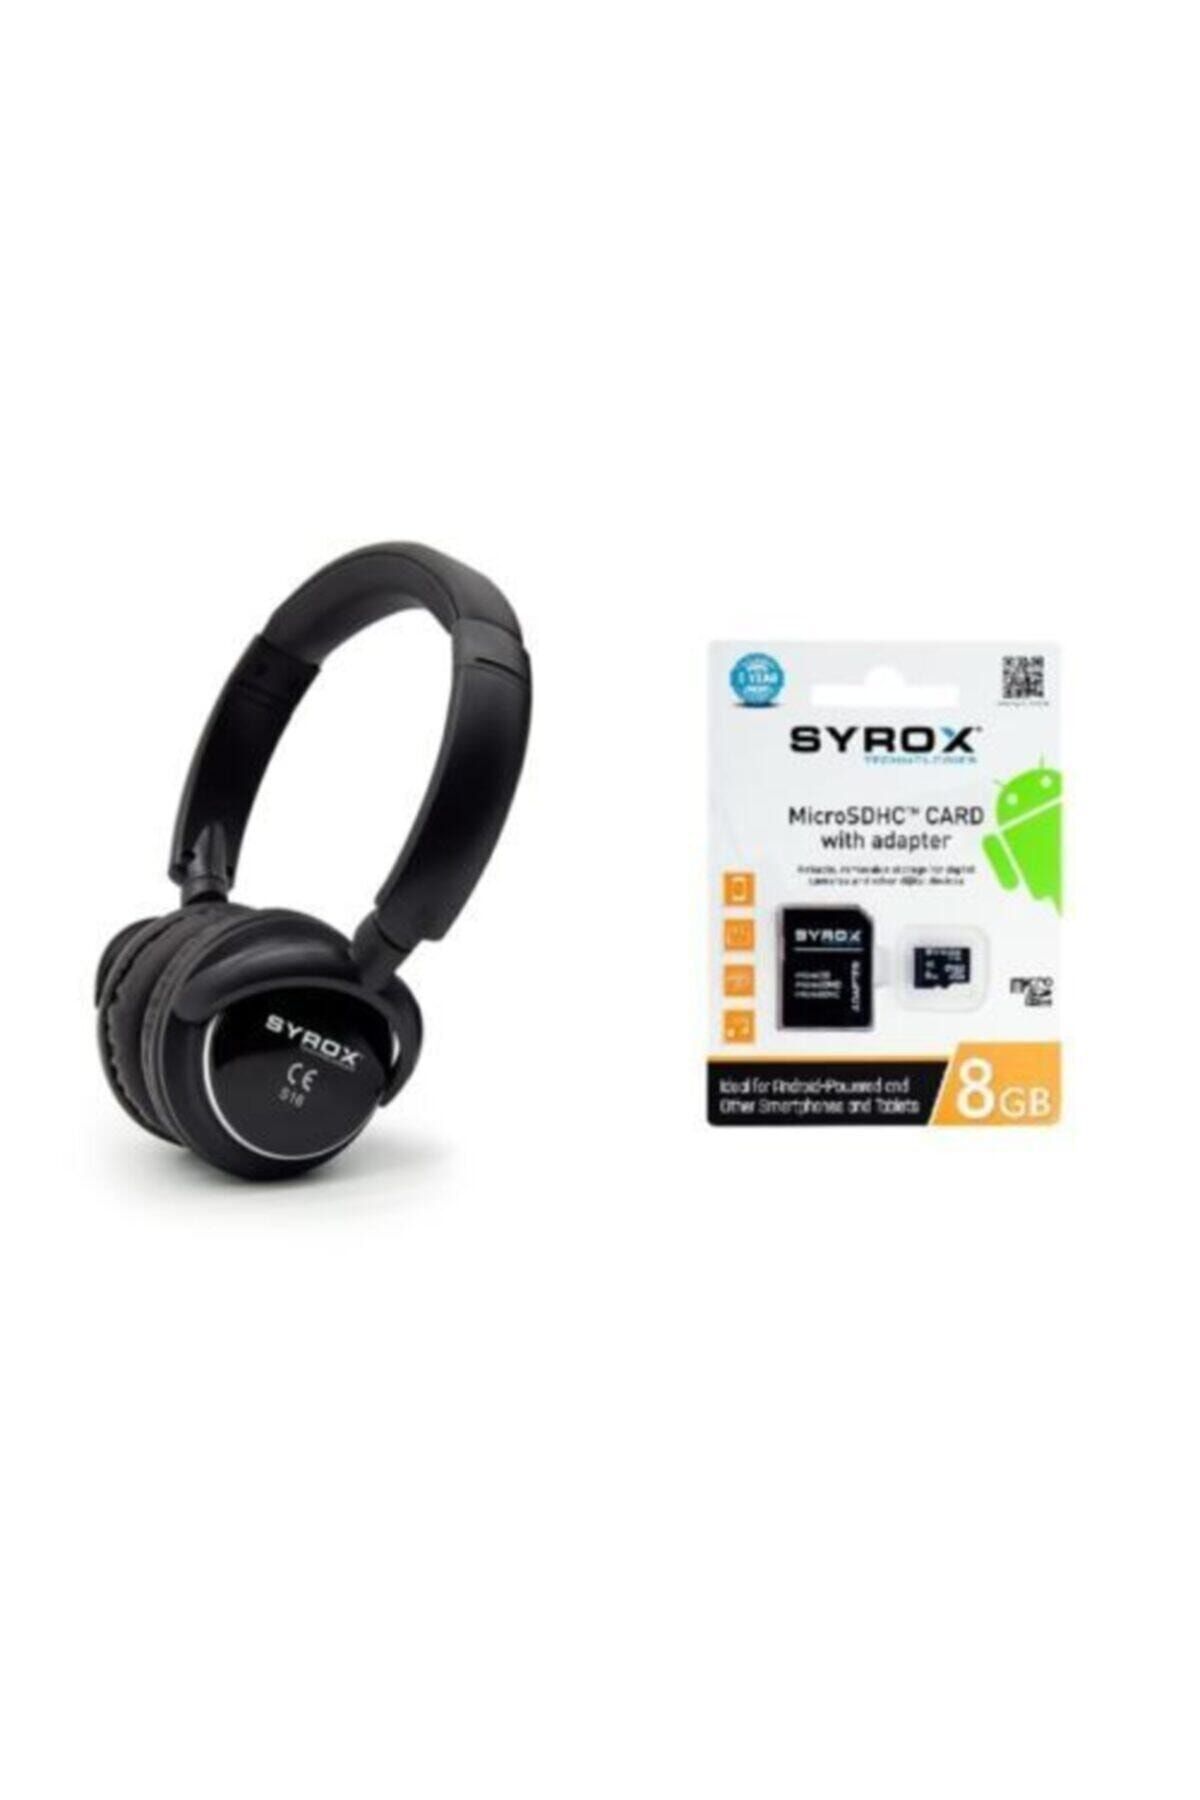 Syrox 8 Gb Hafıza Kartı Ve Kablosuz Bluetooth Kulak Üstü Kulaklık Siyah